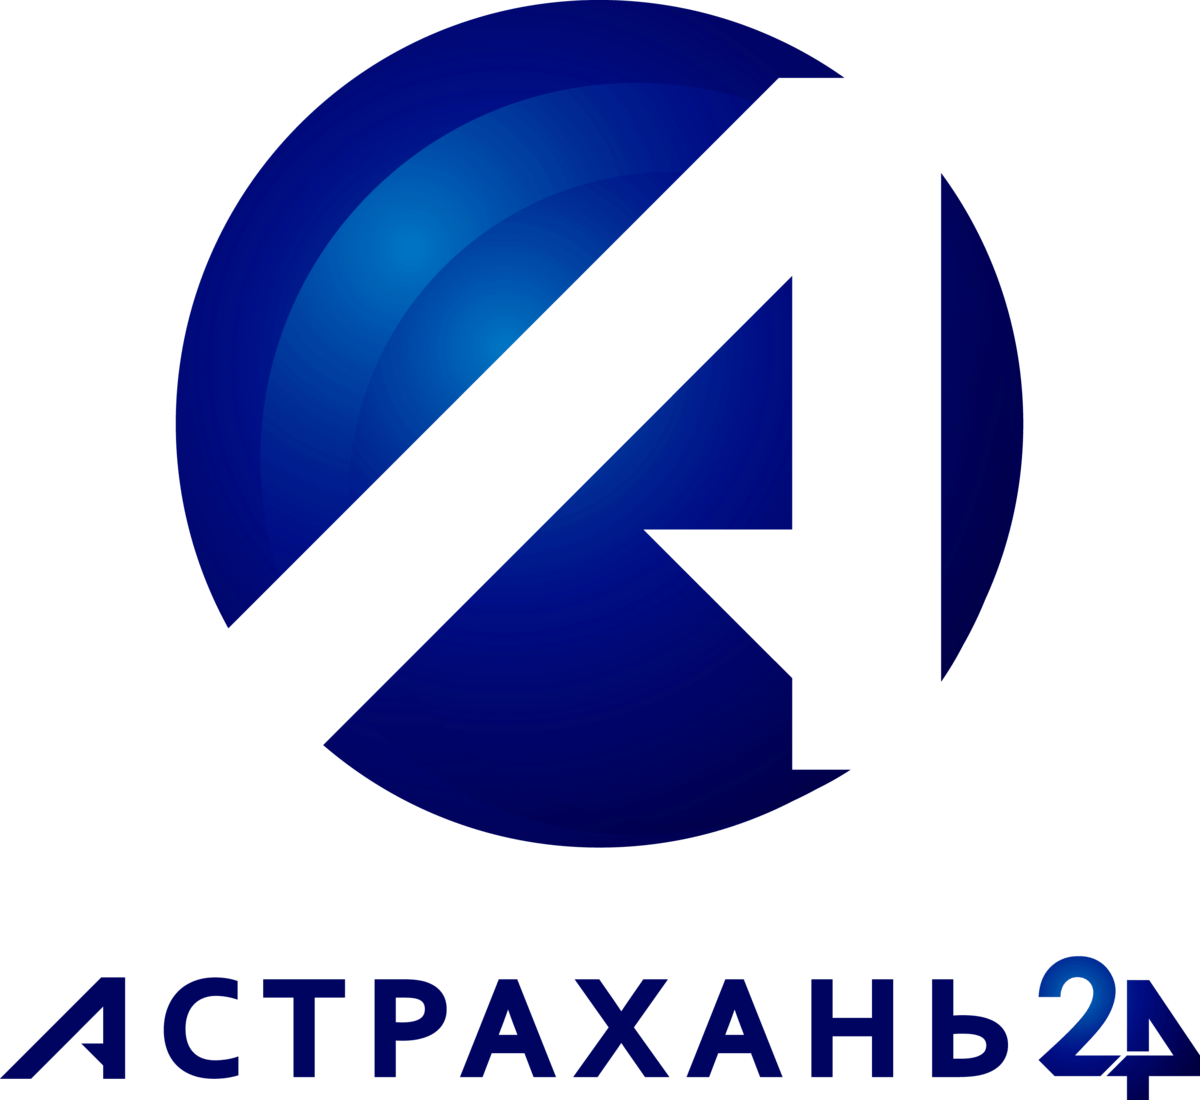 Астрахань 24 сайт. Астрахань 24 лого. Телевидение логотип. Эмблема Астраханского ТВ.